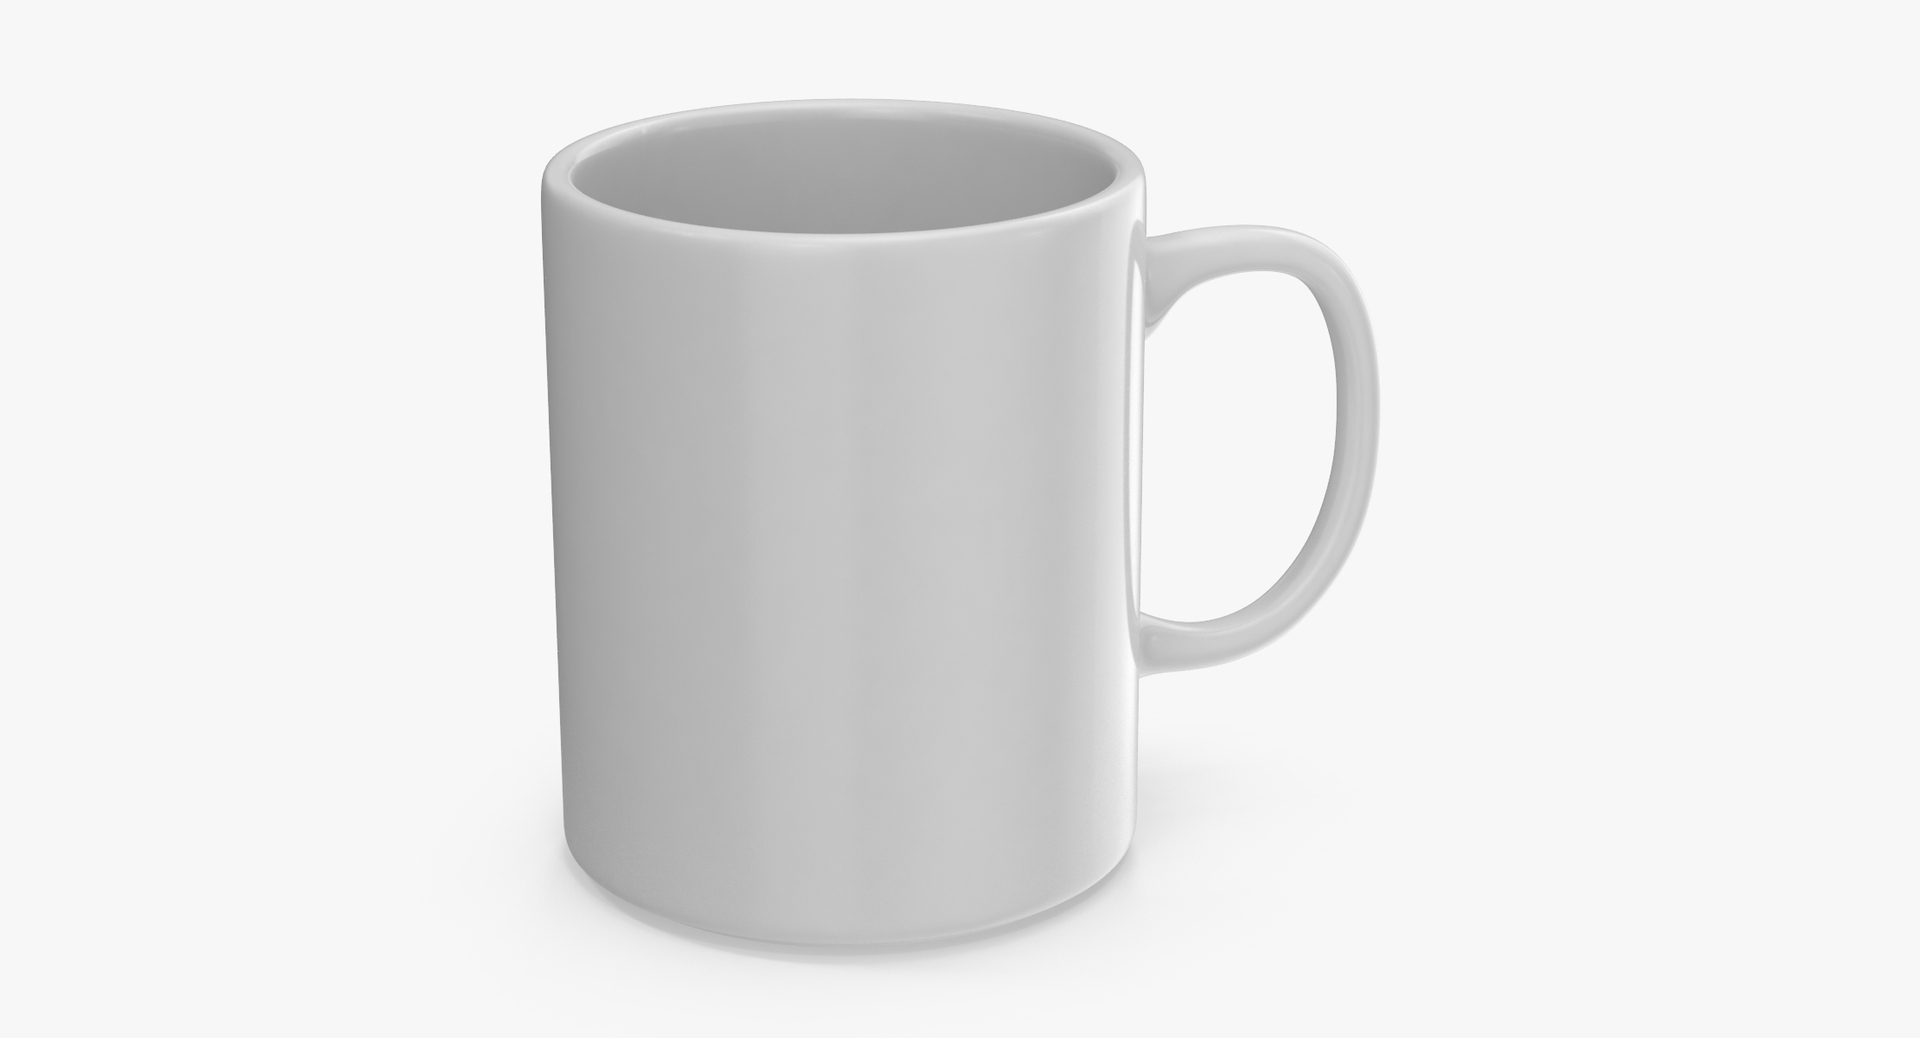 3 d model of a unique mug design, blender render